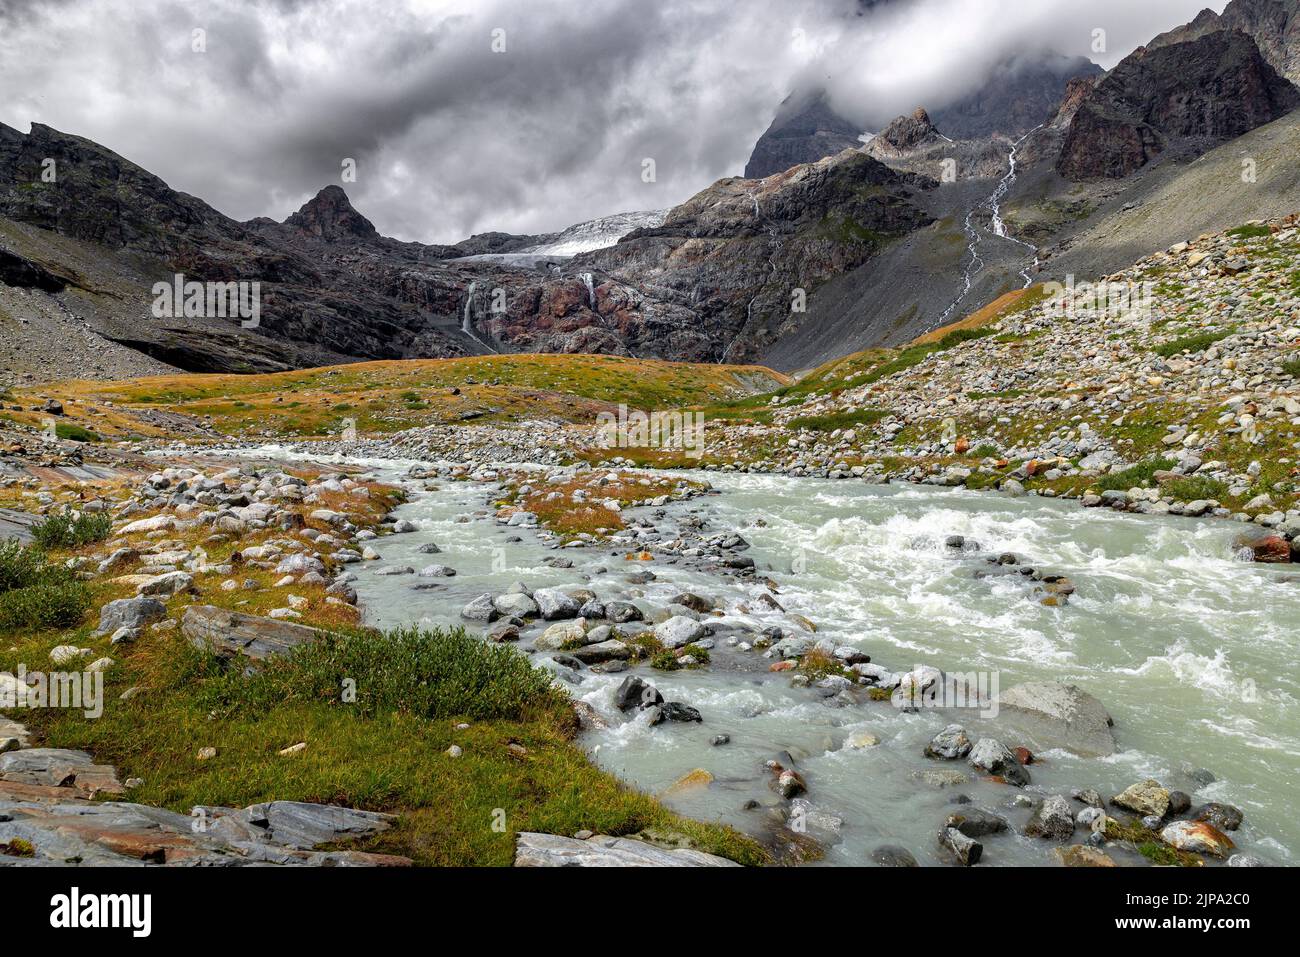 river near the Fellaria glacier on the Italian alps. Stock Photo